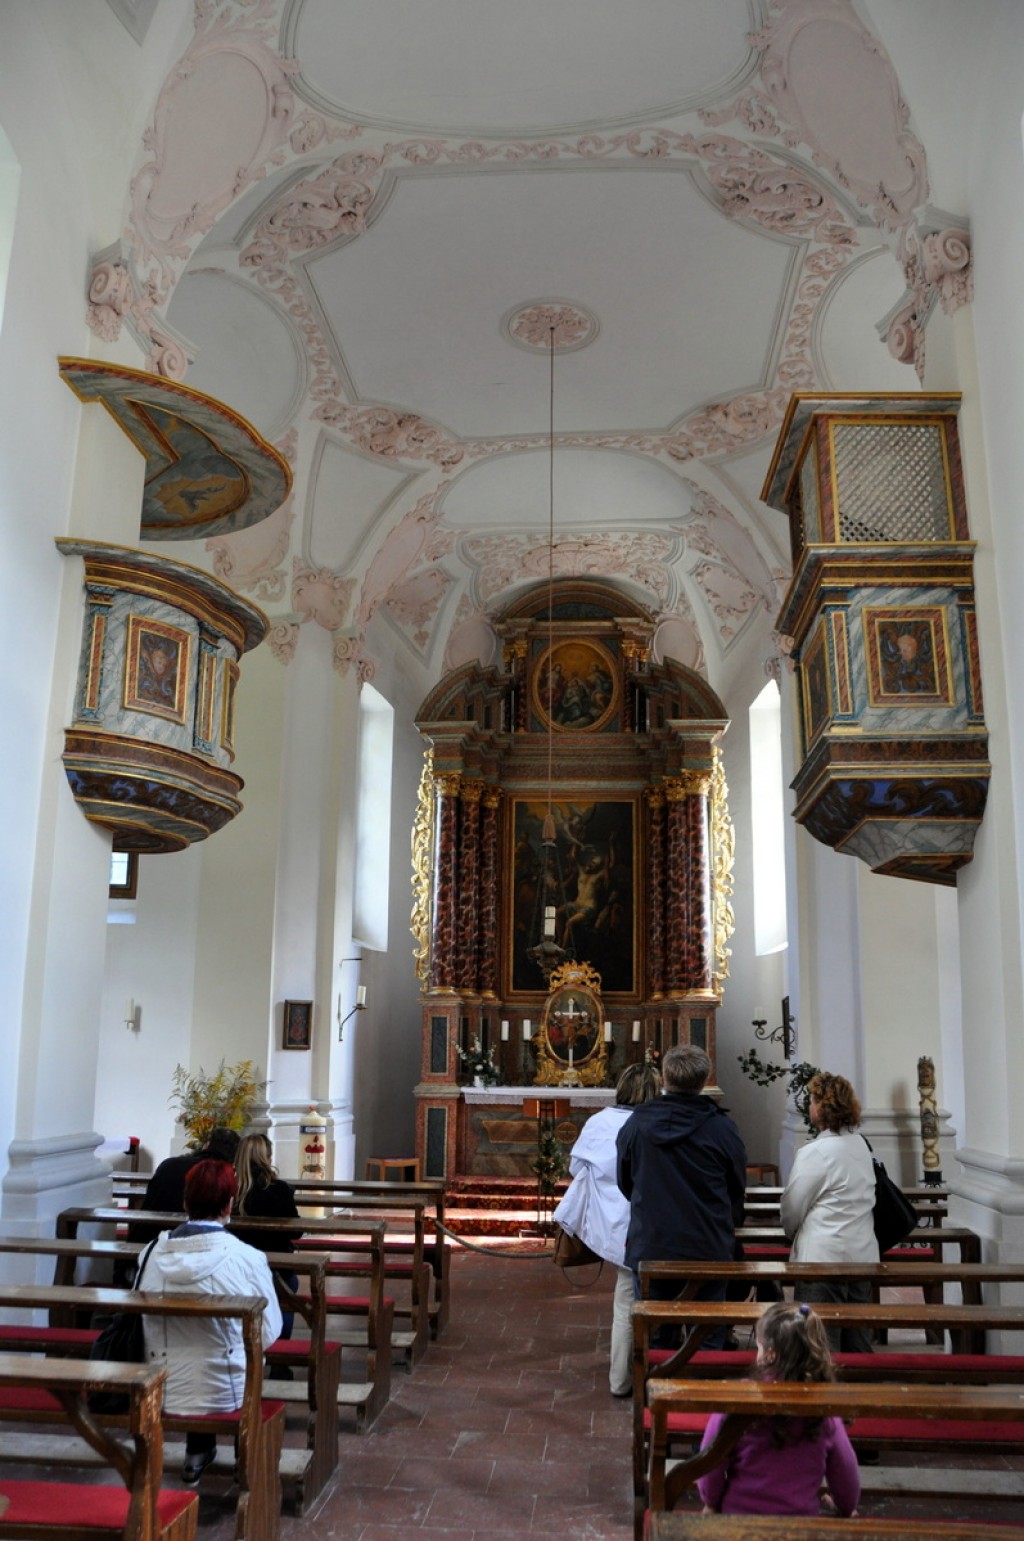 Inside the St. Bartholomä Church.